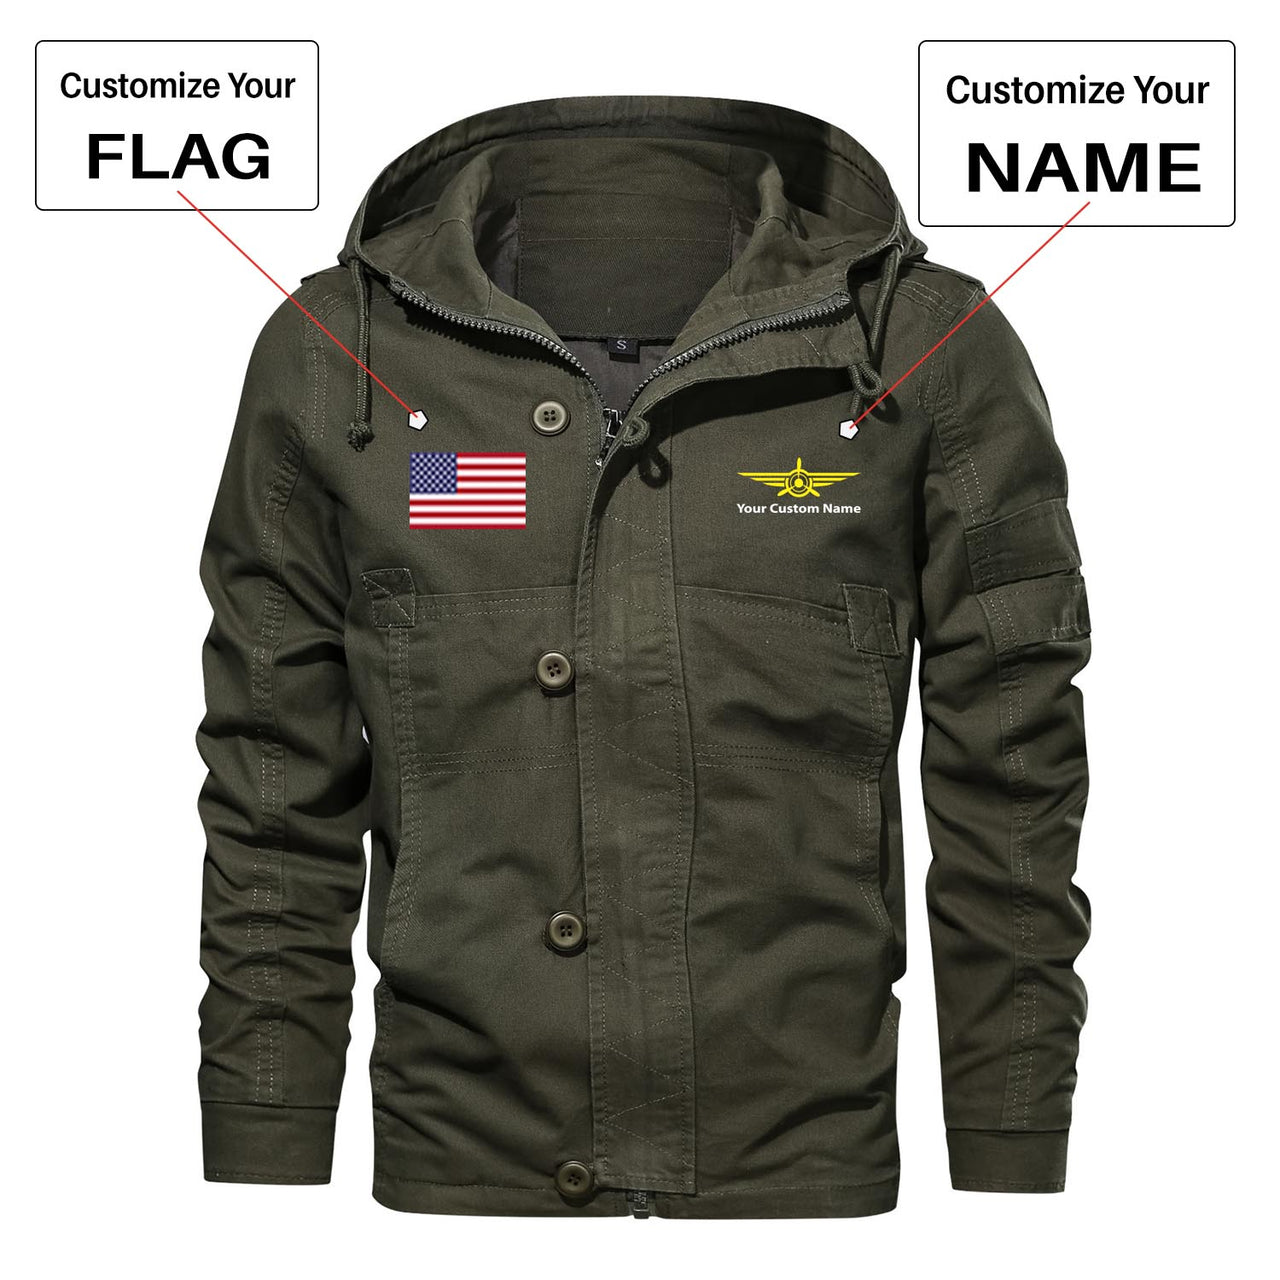 Custom Flag & Name "Badge 3" Designed Cotton Jackets